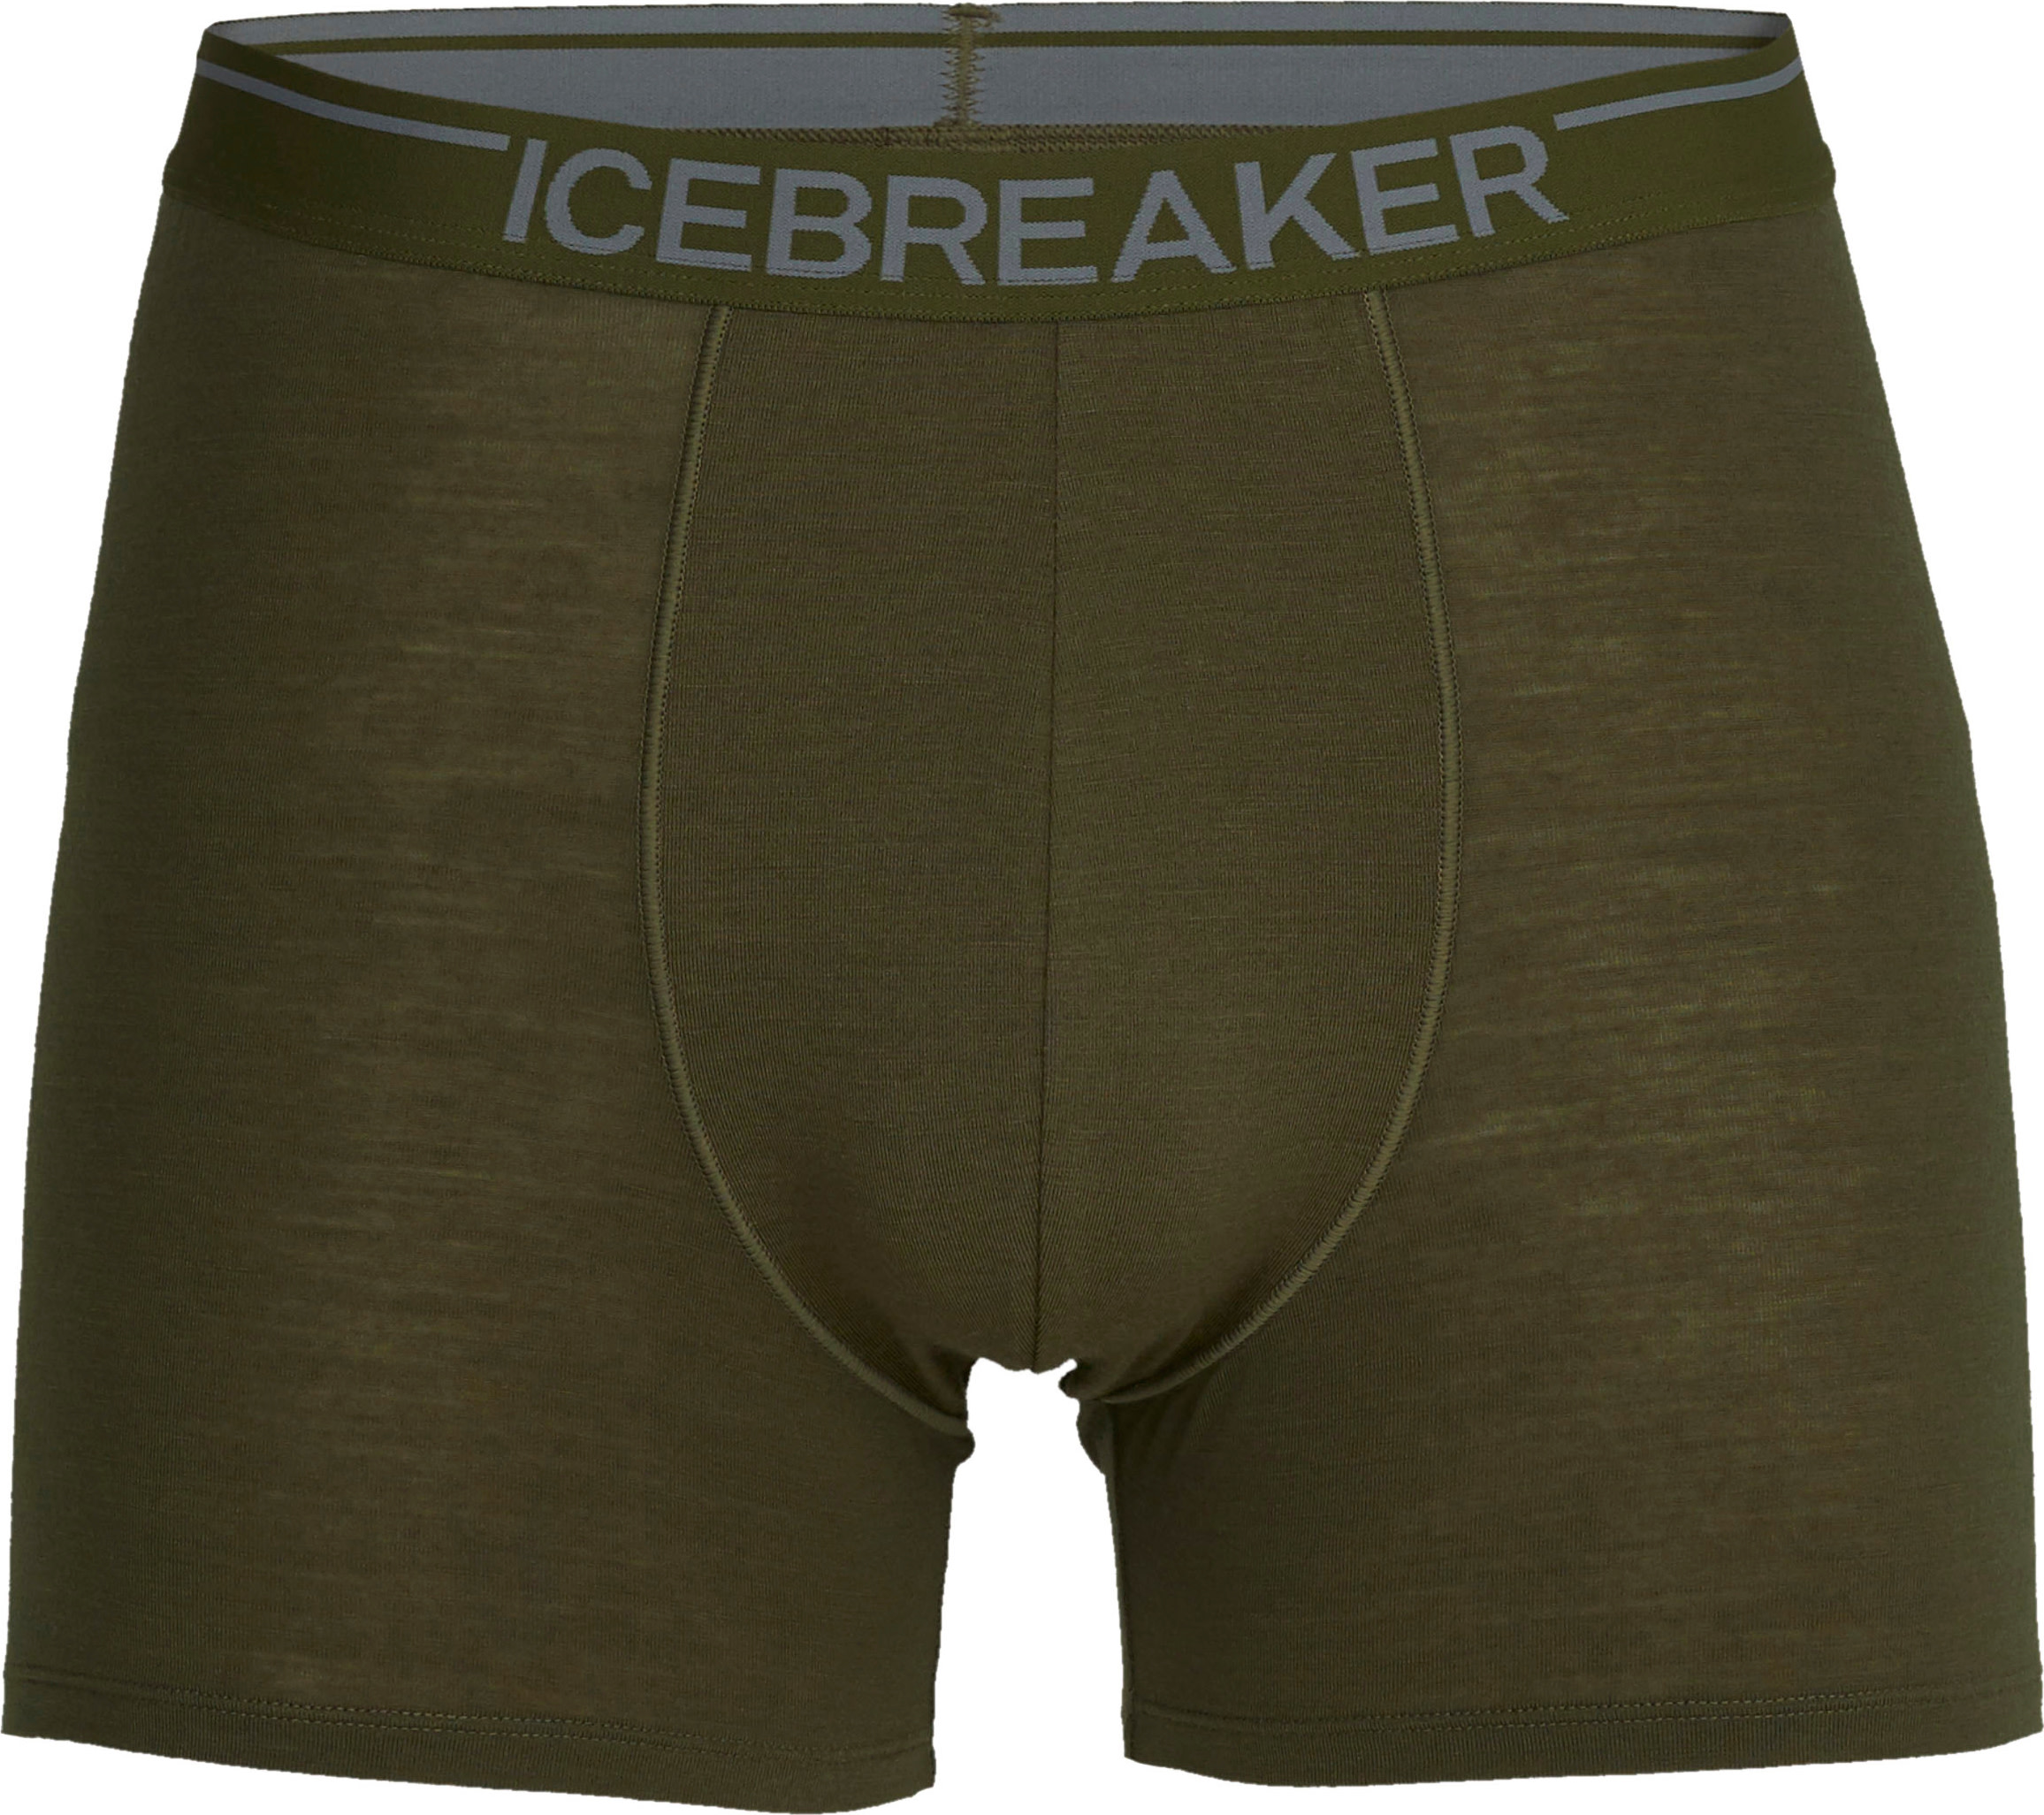 Icebreaker Men’s Anatomica Boxers LODEN